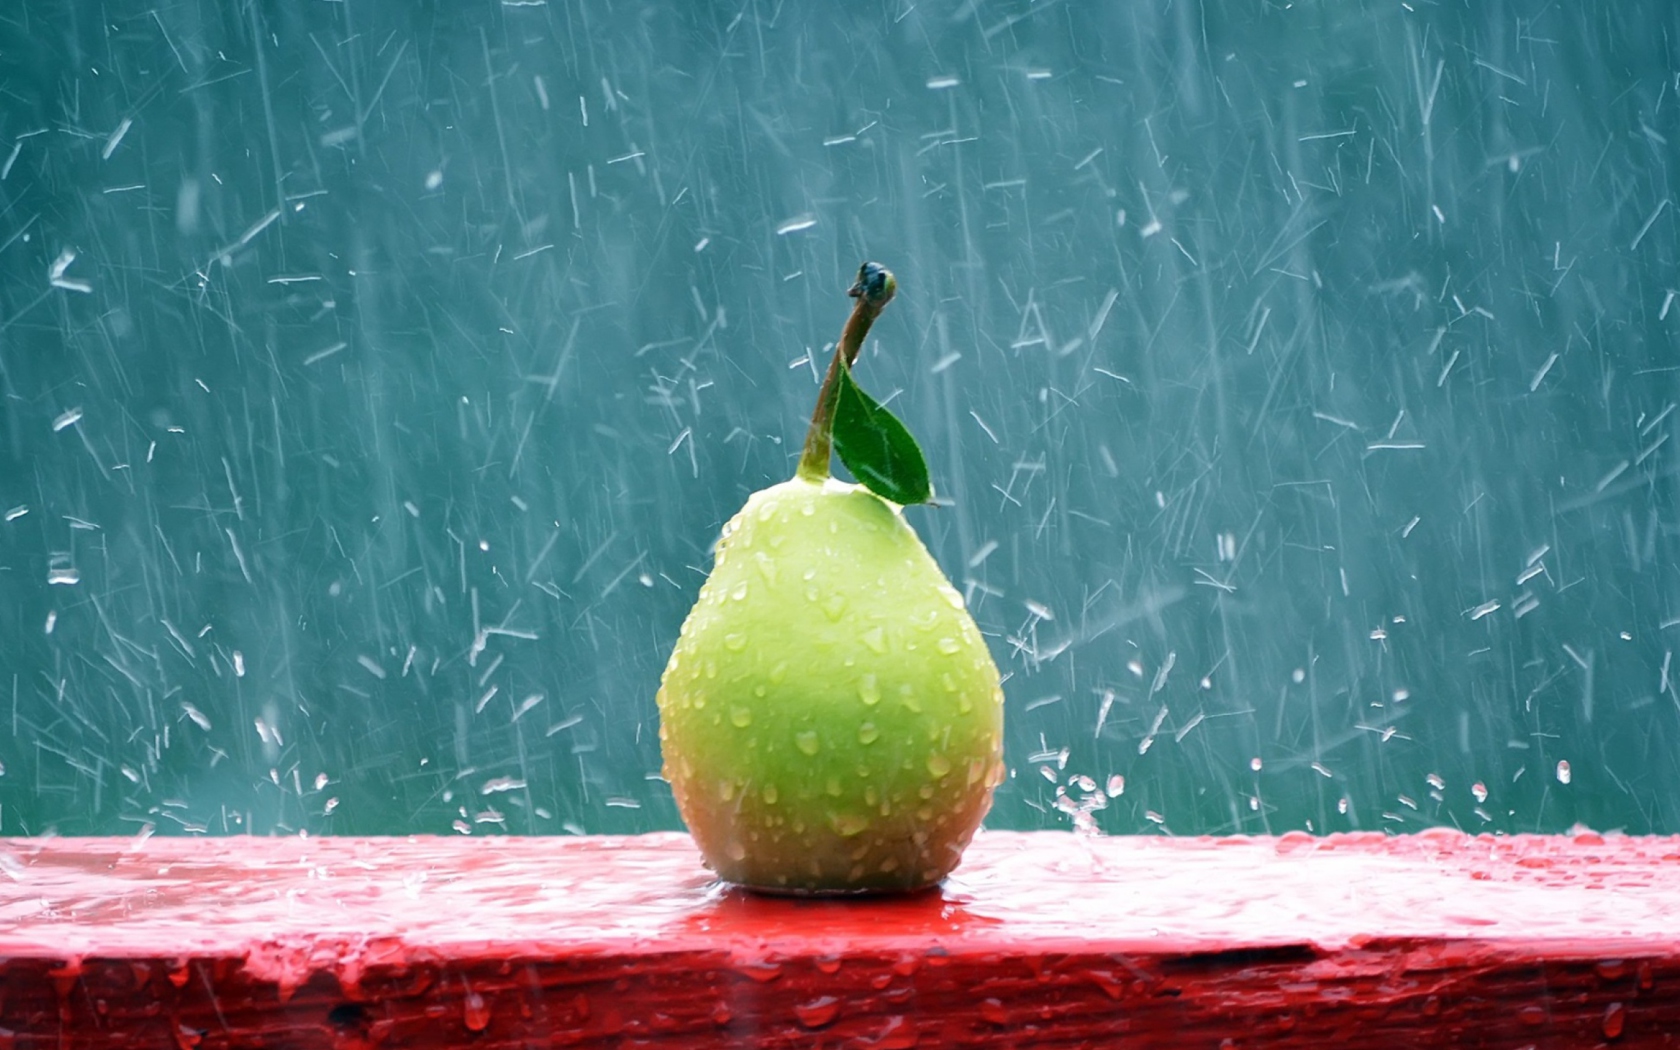 Обои Green Pear In The Rain 1680x1050